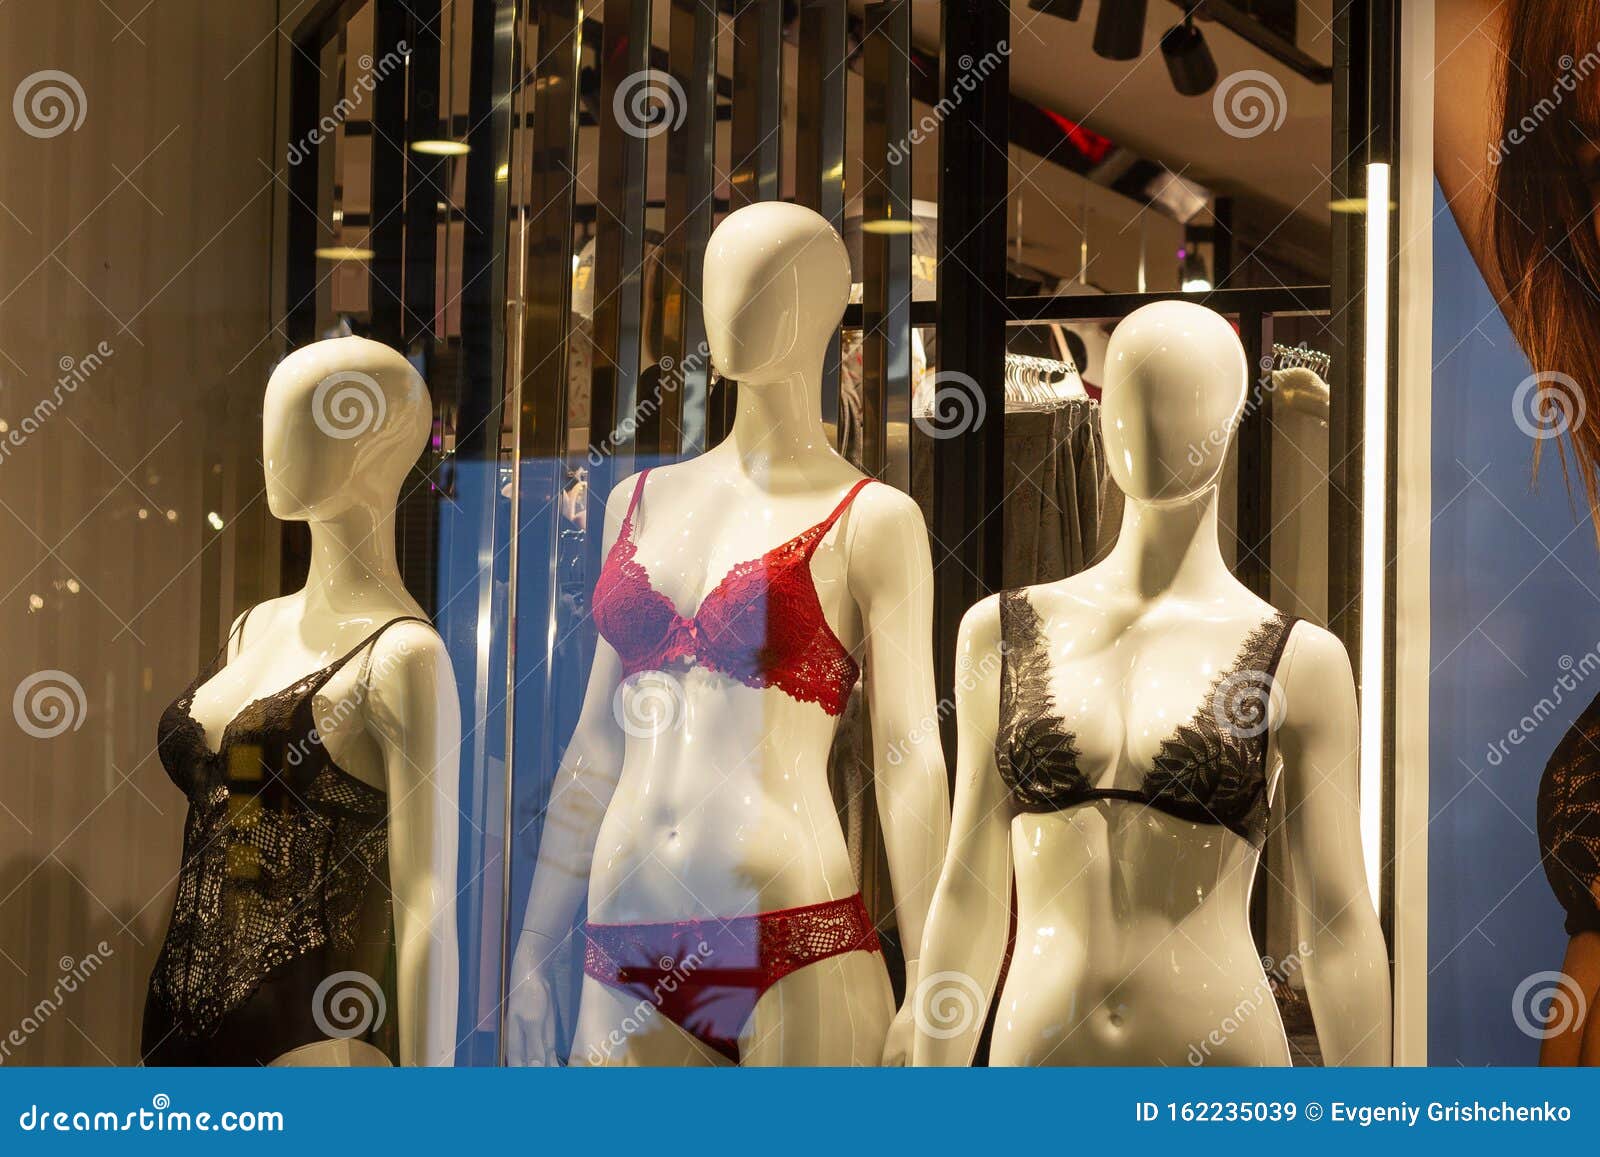 Εκθεσιακό μαγαζί με σέξι εσώρουχα για μανεκέν Στοκ Εικόνα - εικόνα από :  162235039